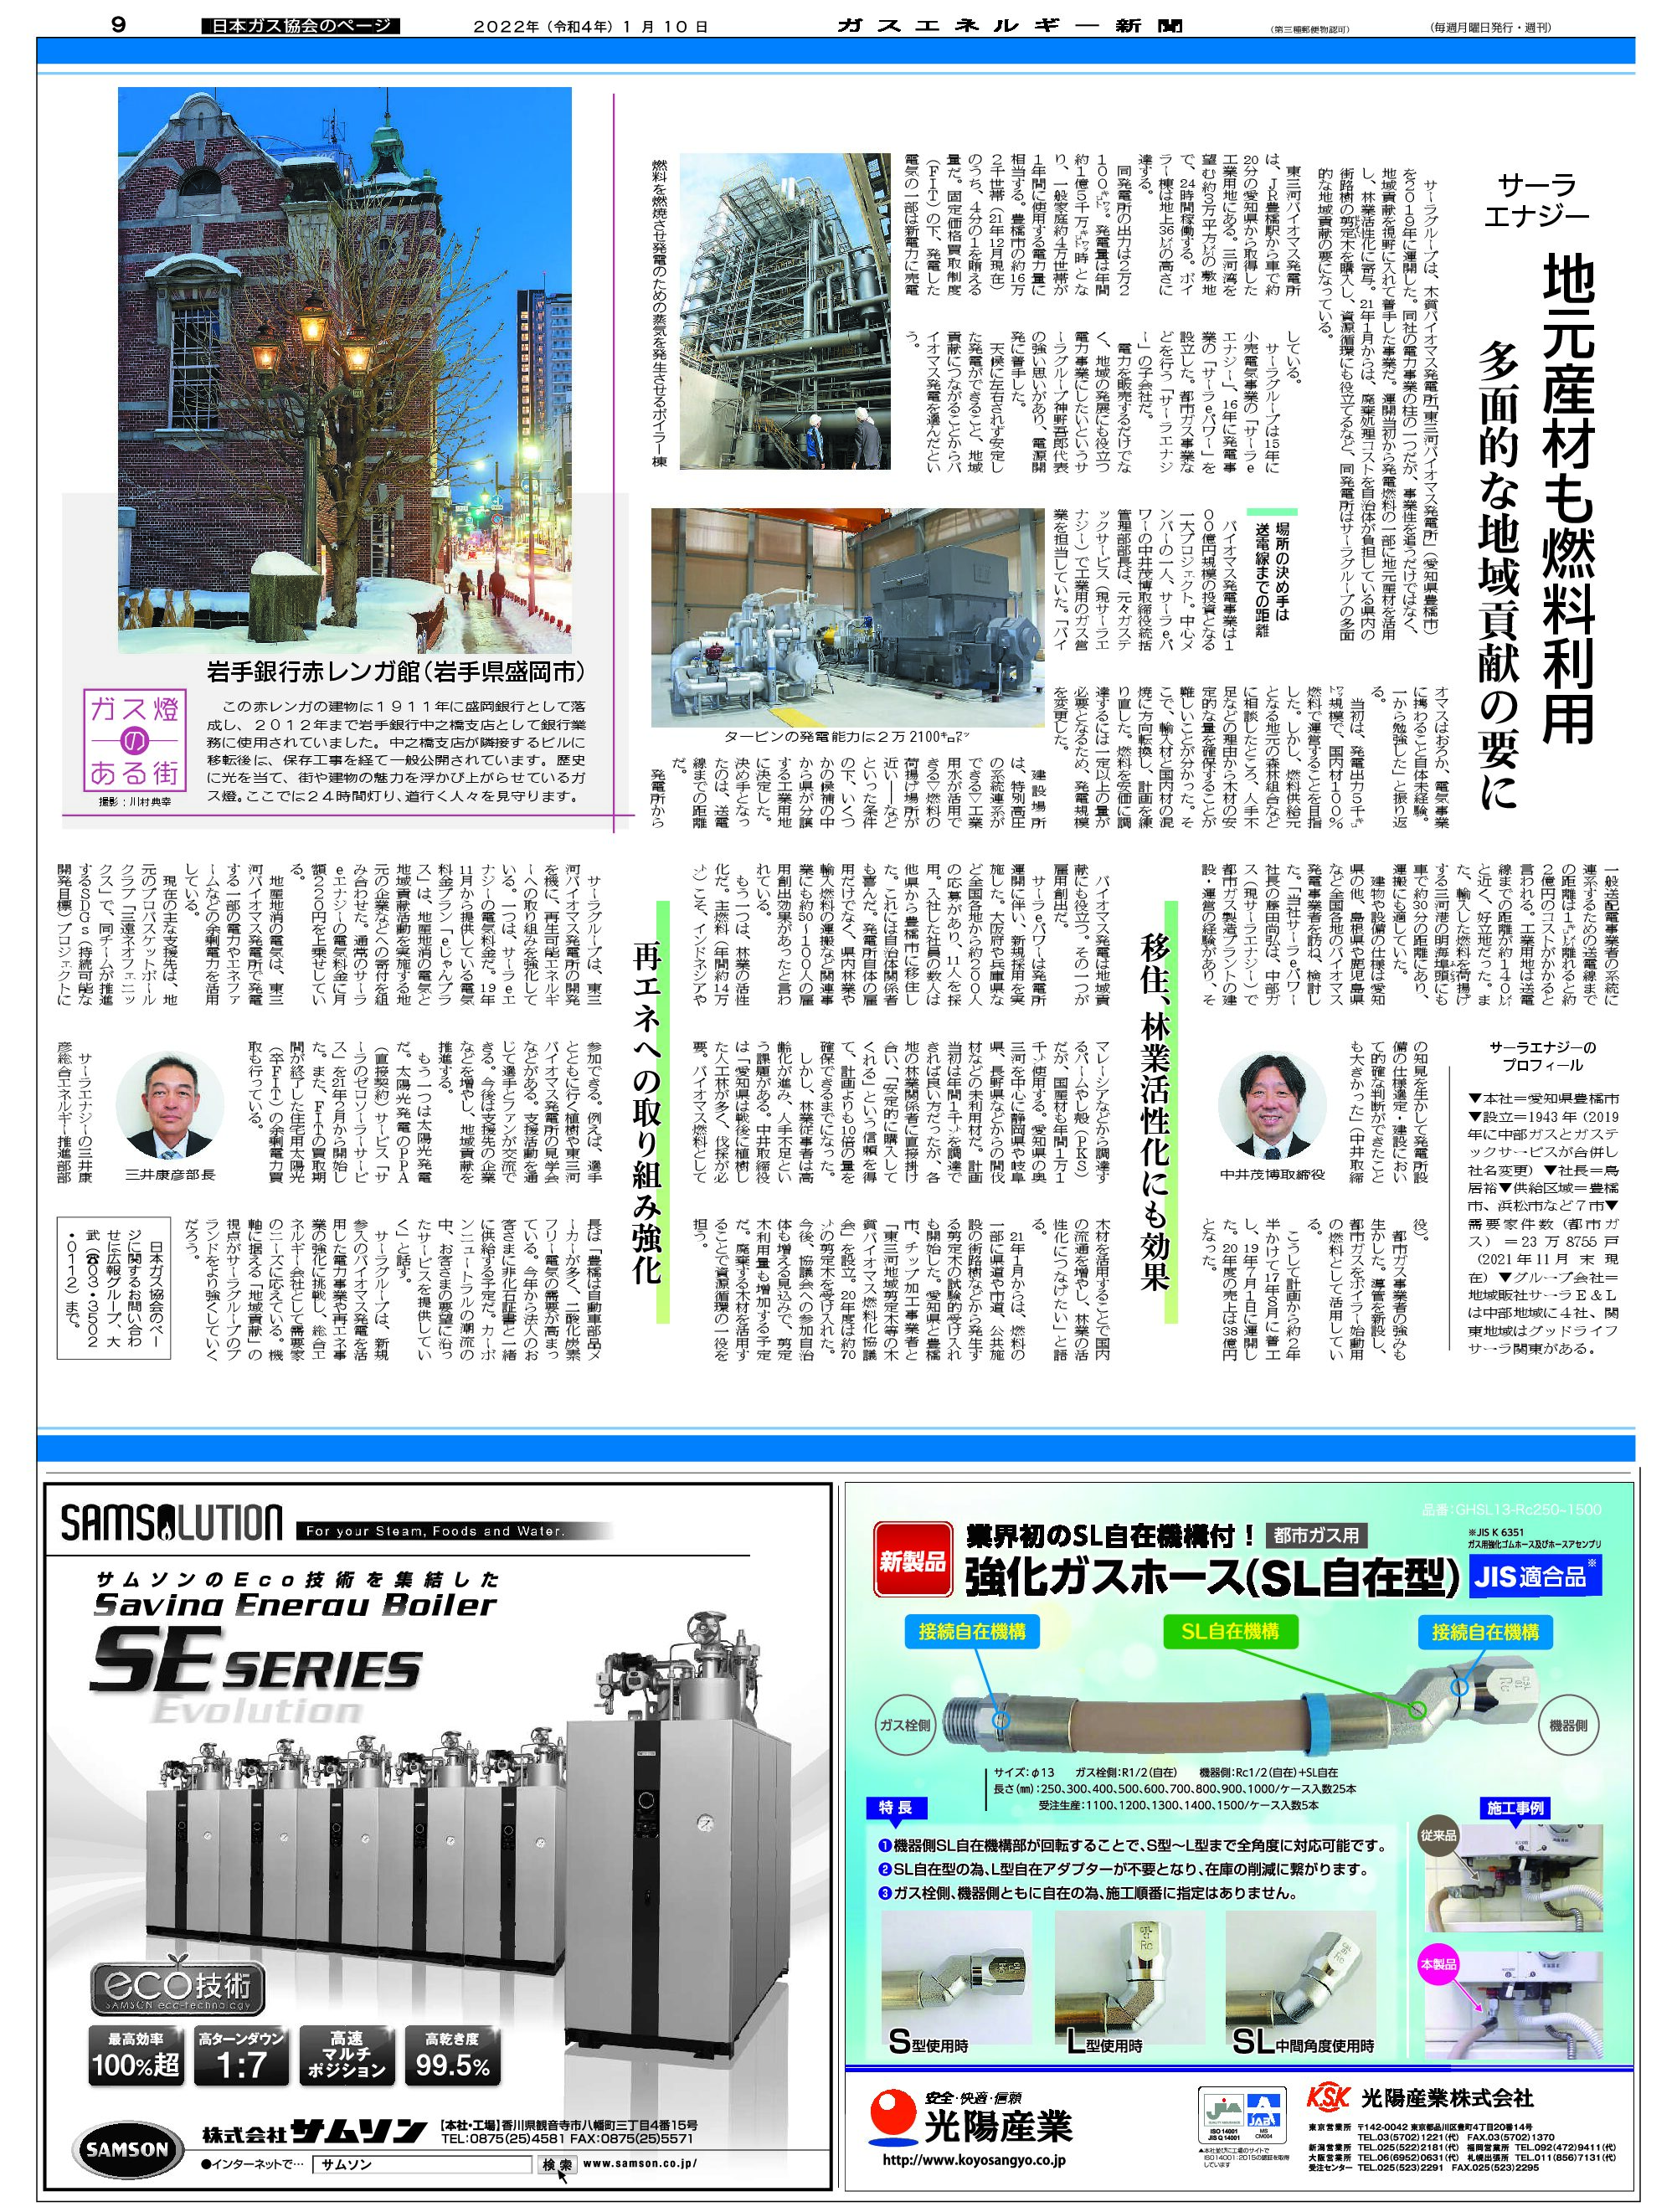 【日本ガス協会のページ】低炭素な電力の供給(事例2)サーラエナジー/地元産材も燃料利用、多面的な地域貢献の要に